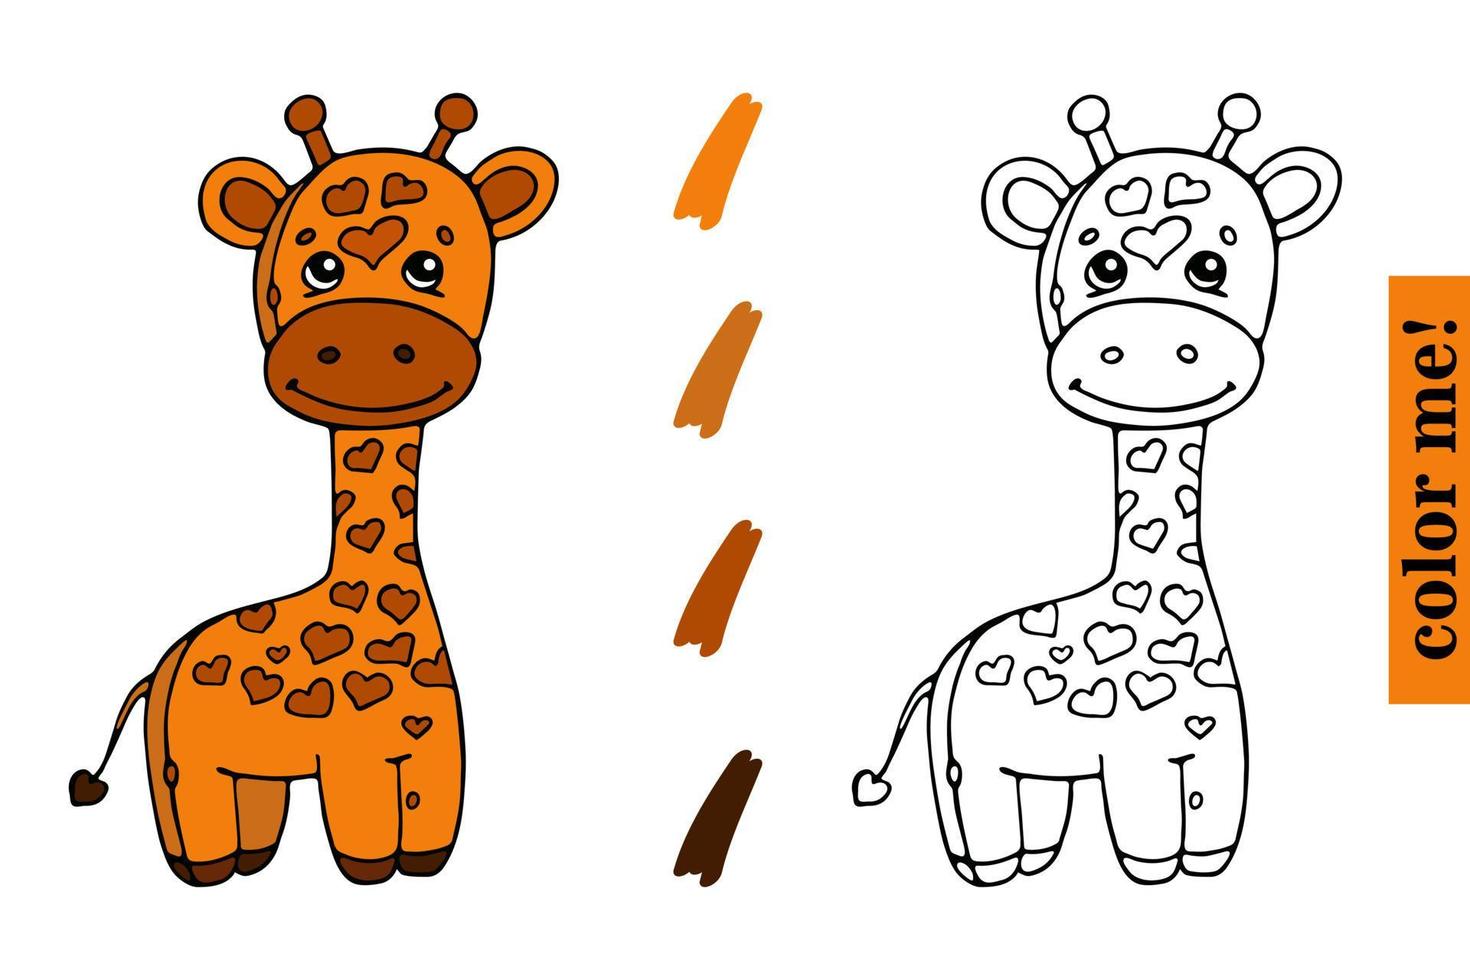 süßes Giraffen-Cartoon-Malbuch für Kinder Premium-Vektor Premium-Vektor vektor